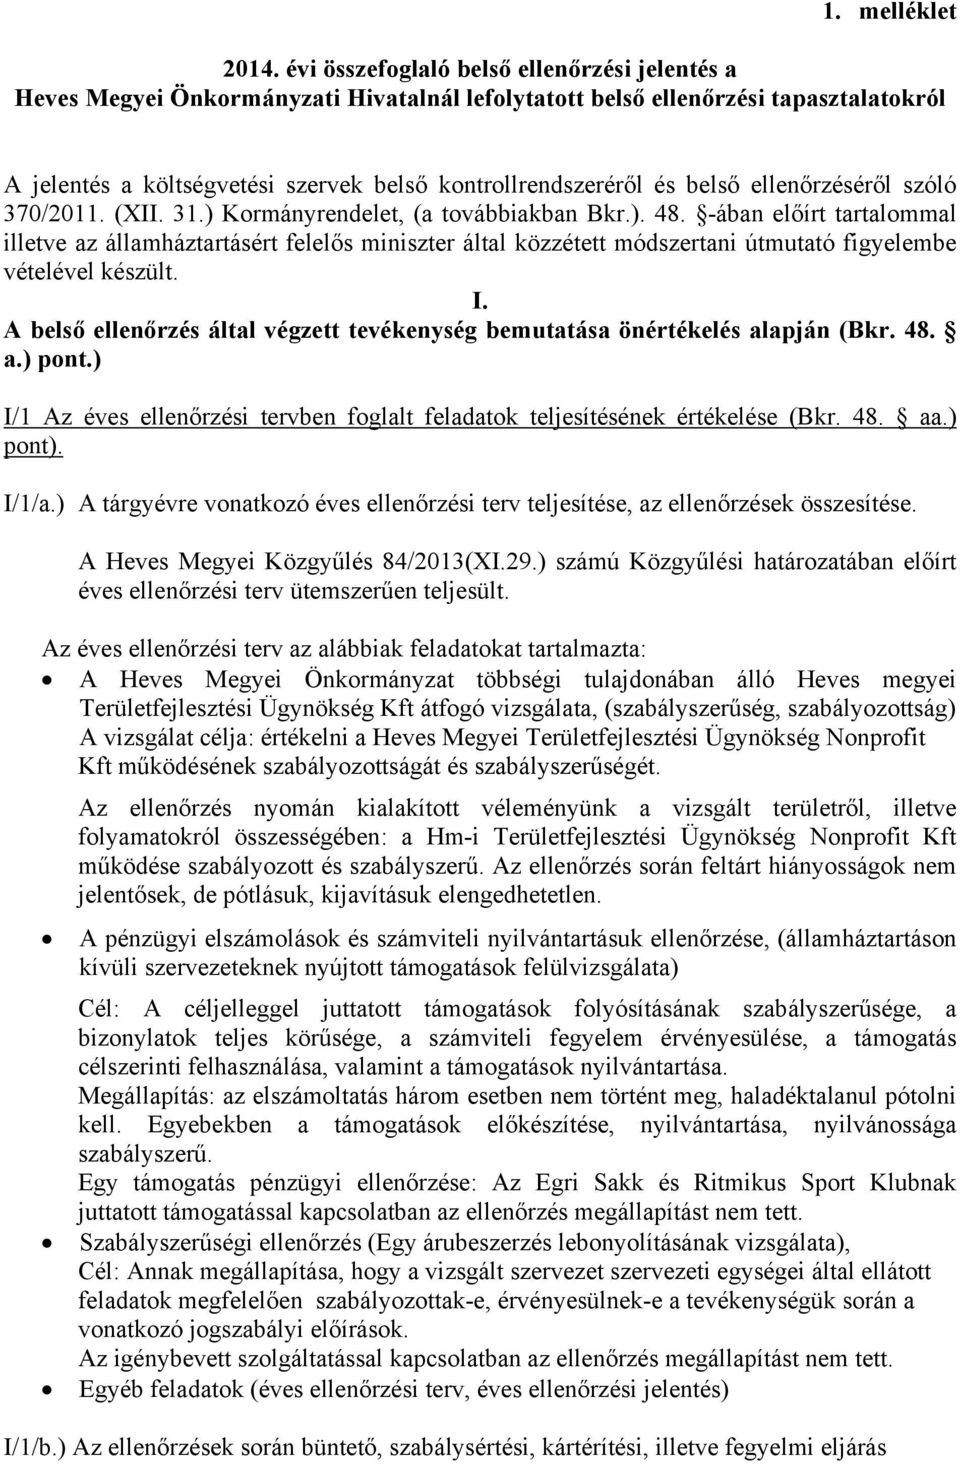 belső ellenőrzéséről szóló 370/2011. (XII. 31.) Kormányrendelet, (a továbbiakban Bkr.). 48.